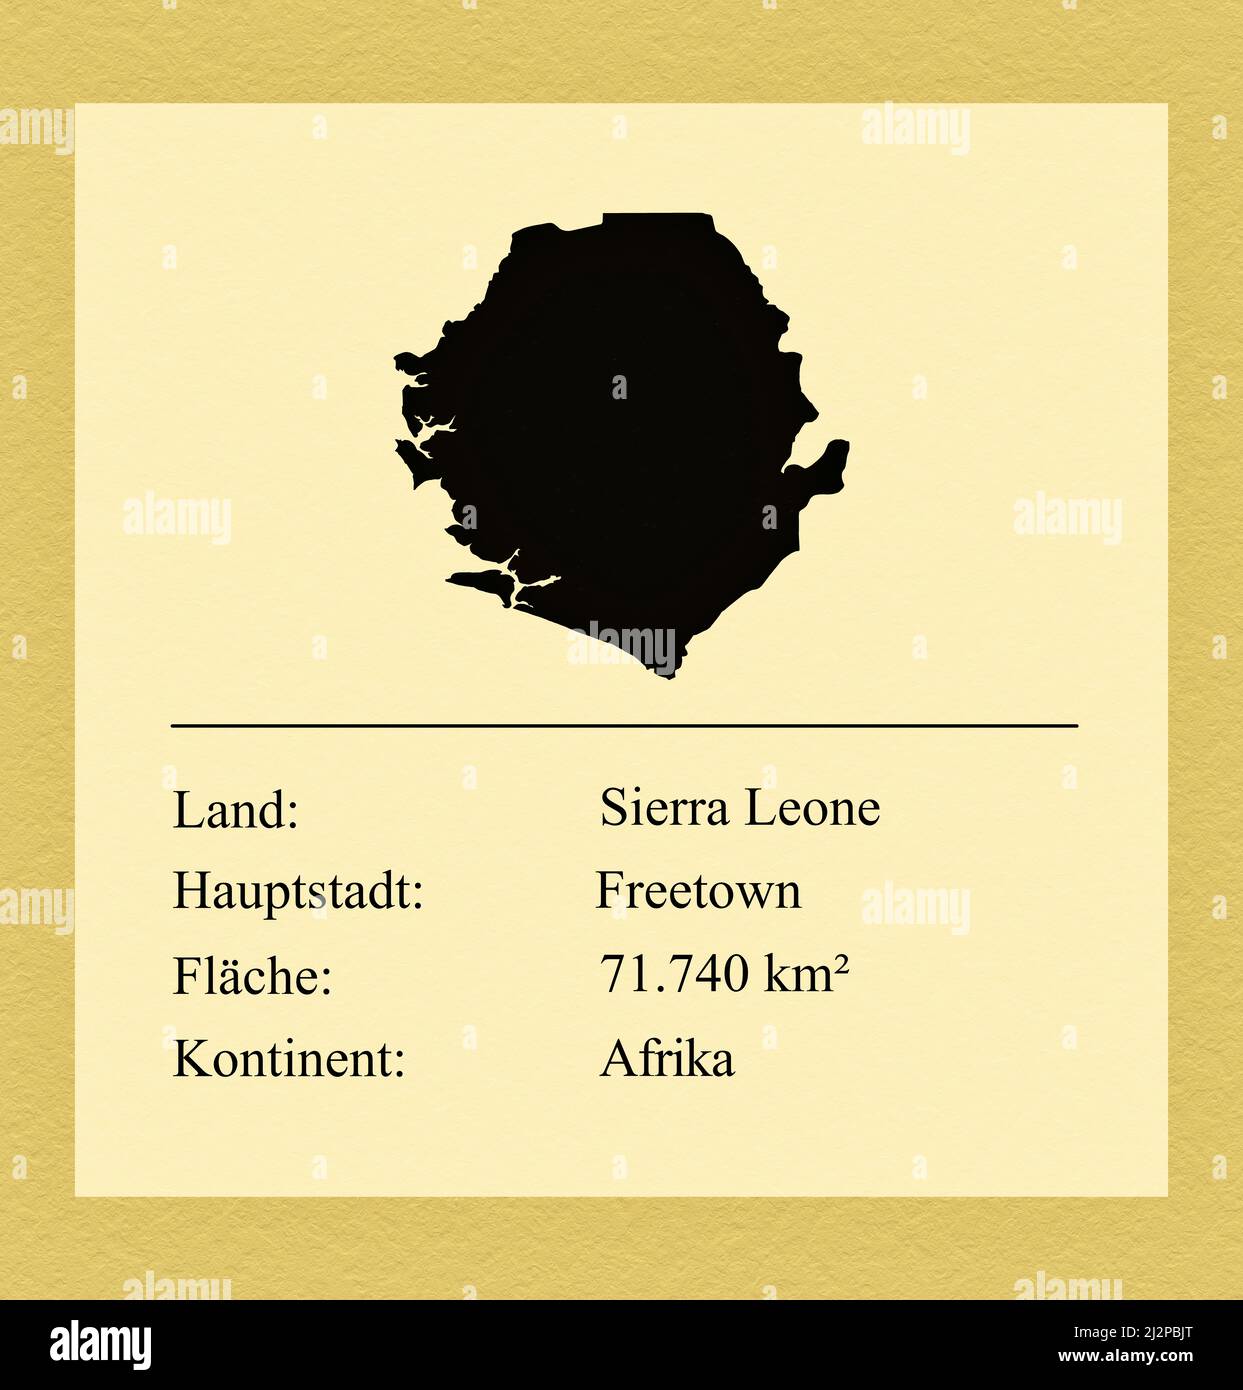 Umrisse des Landes Sierra Leona, darunter ein kleiner Steckbrief mit Ländernamen, Hauptstadt, Fläche und Kontinent Foto de stock